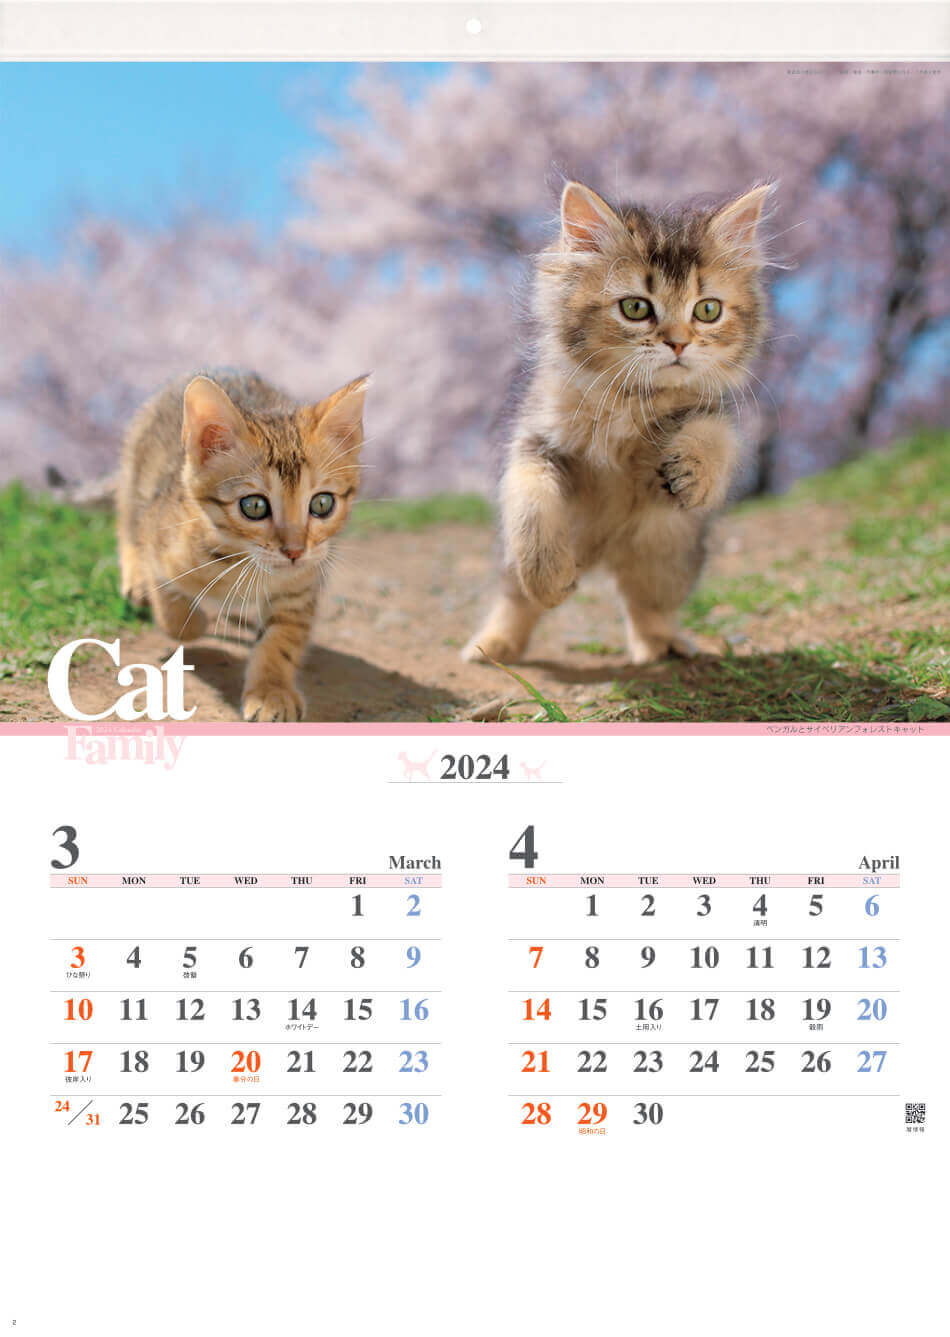 ベンガル、サイベリアンフォレストキャット キャッツファミリー 2024年カレンダーの画像